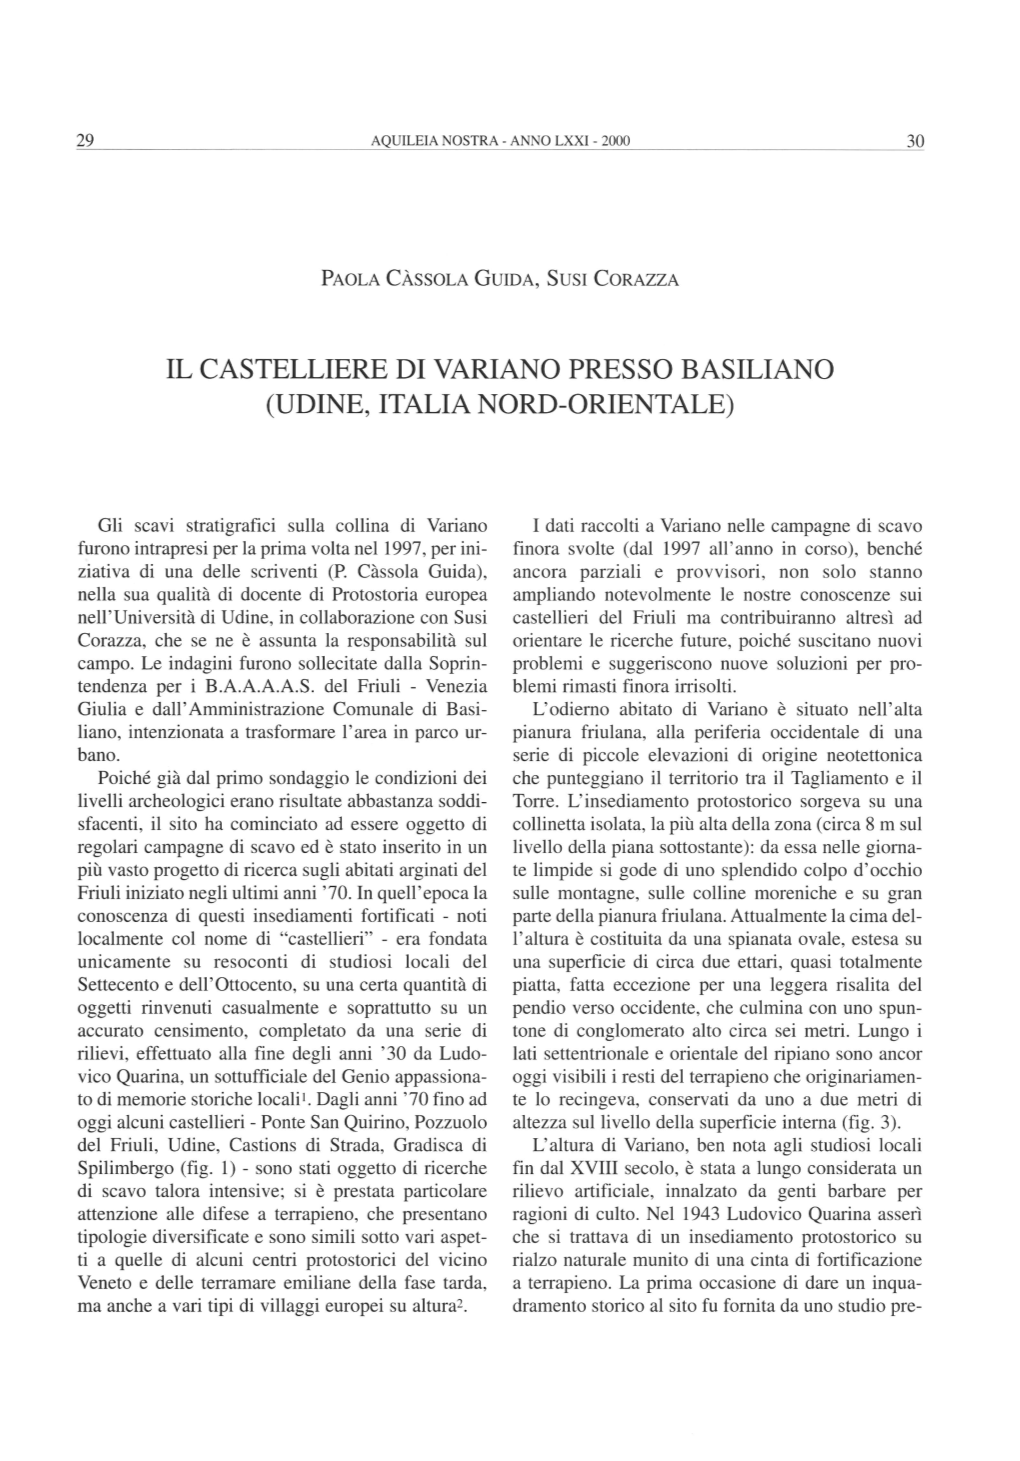 Il Castelliere Di Variano Presso Basiliano (Udine, Italia Nord-Orientale)